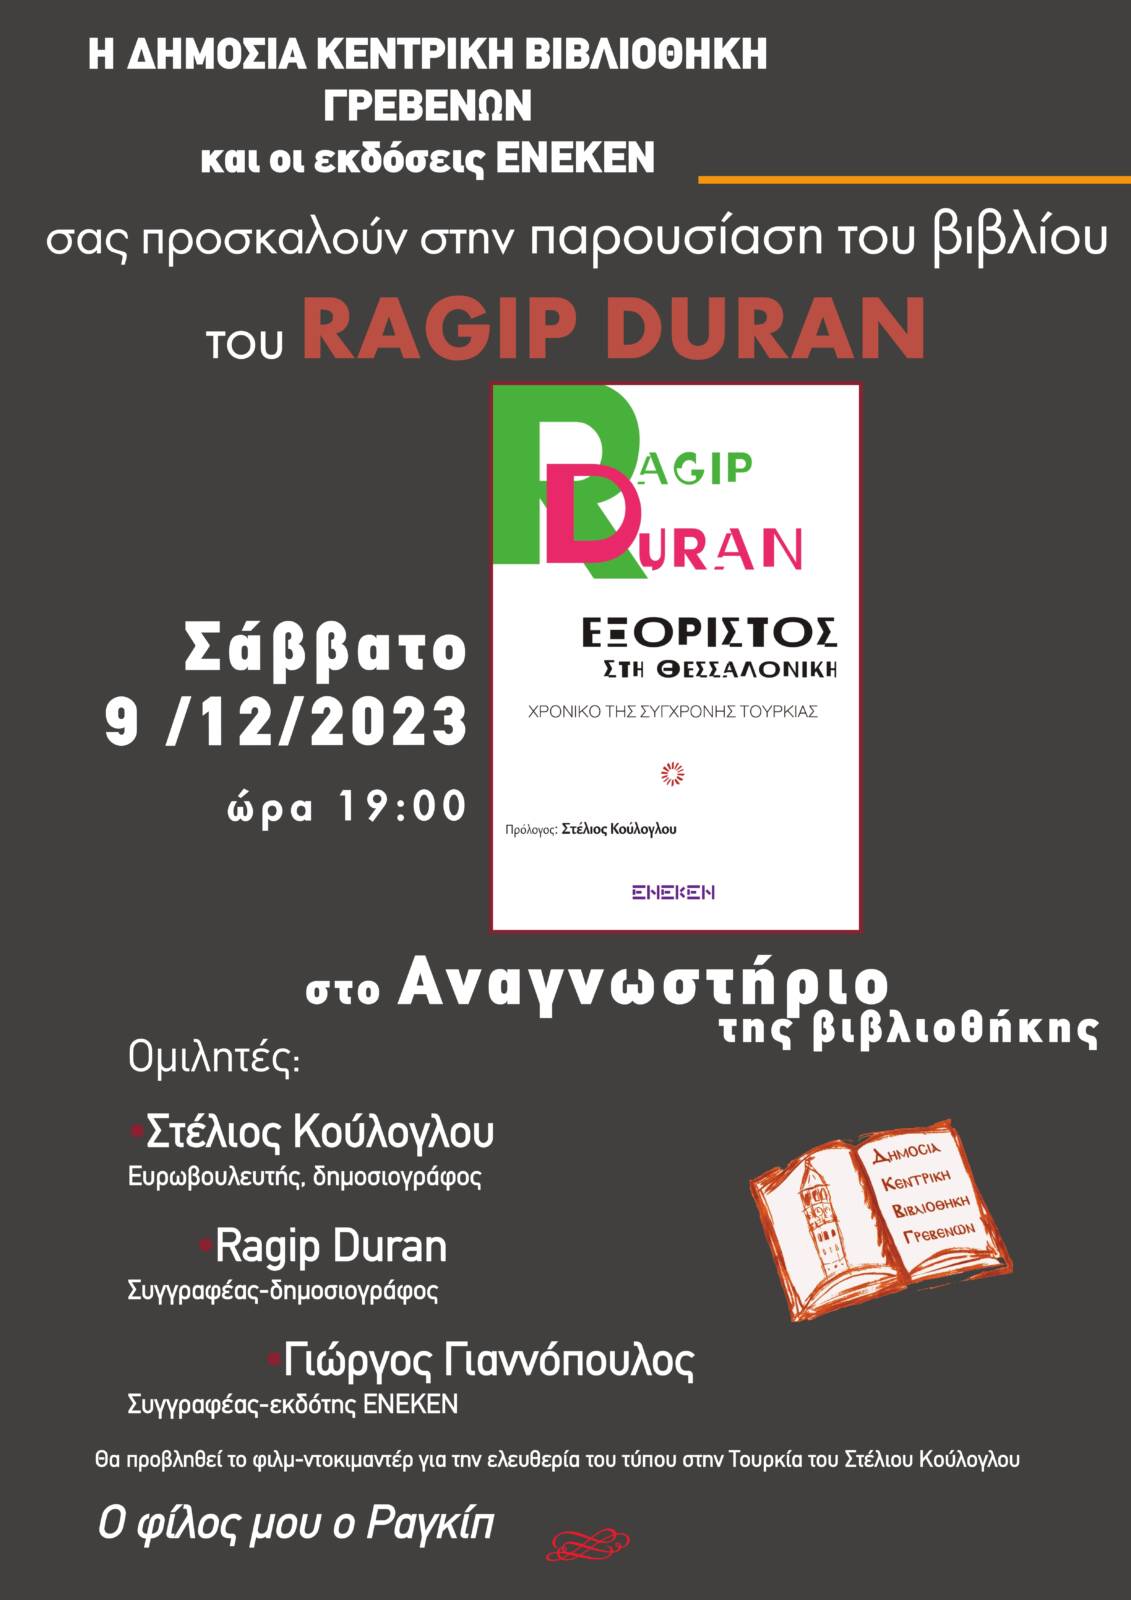 Παρουσίαση του βιβλίου “Εξόριστος στη Θεσσαλονίκη, Χρονικό της σύγχρονης Τουρκίας” του Ραγκίπ Ντουράν